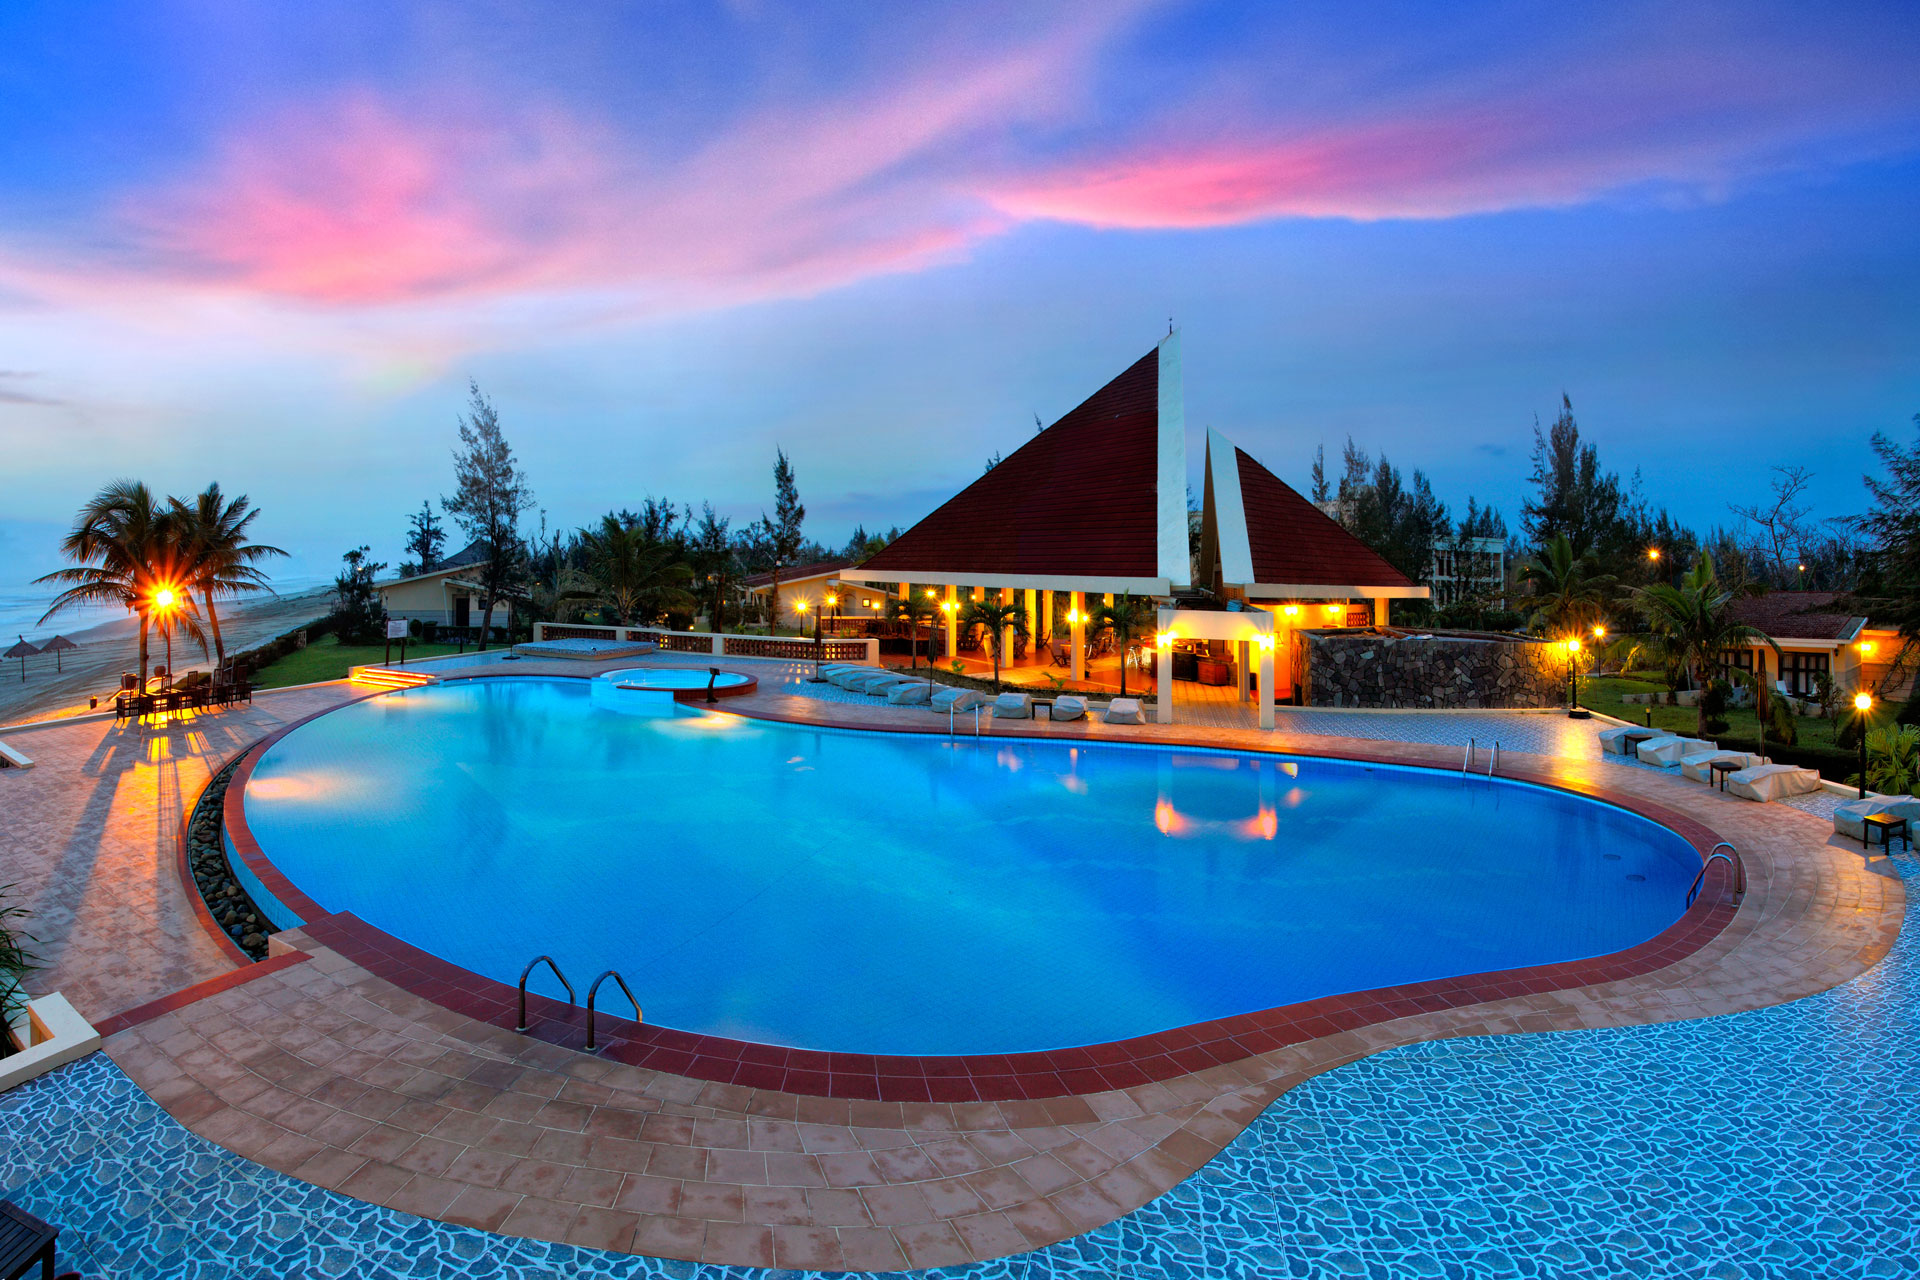 Tổng 11 Resort Bạn Cần Biết Khi Đi Du Lịch Đà Nẵng